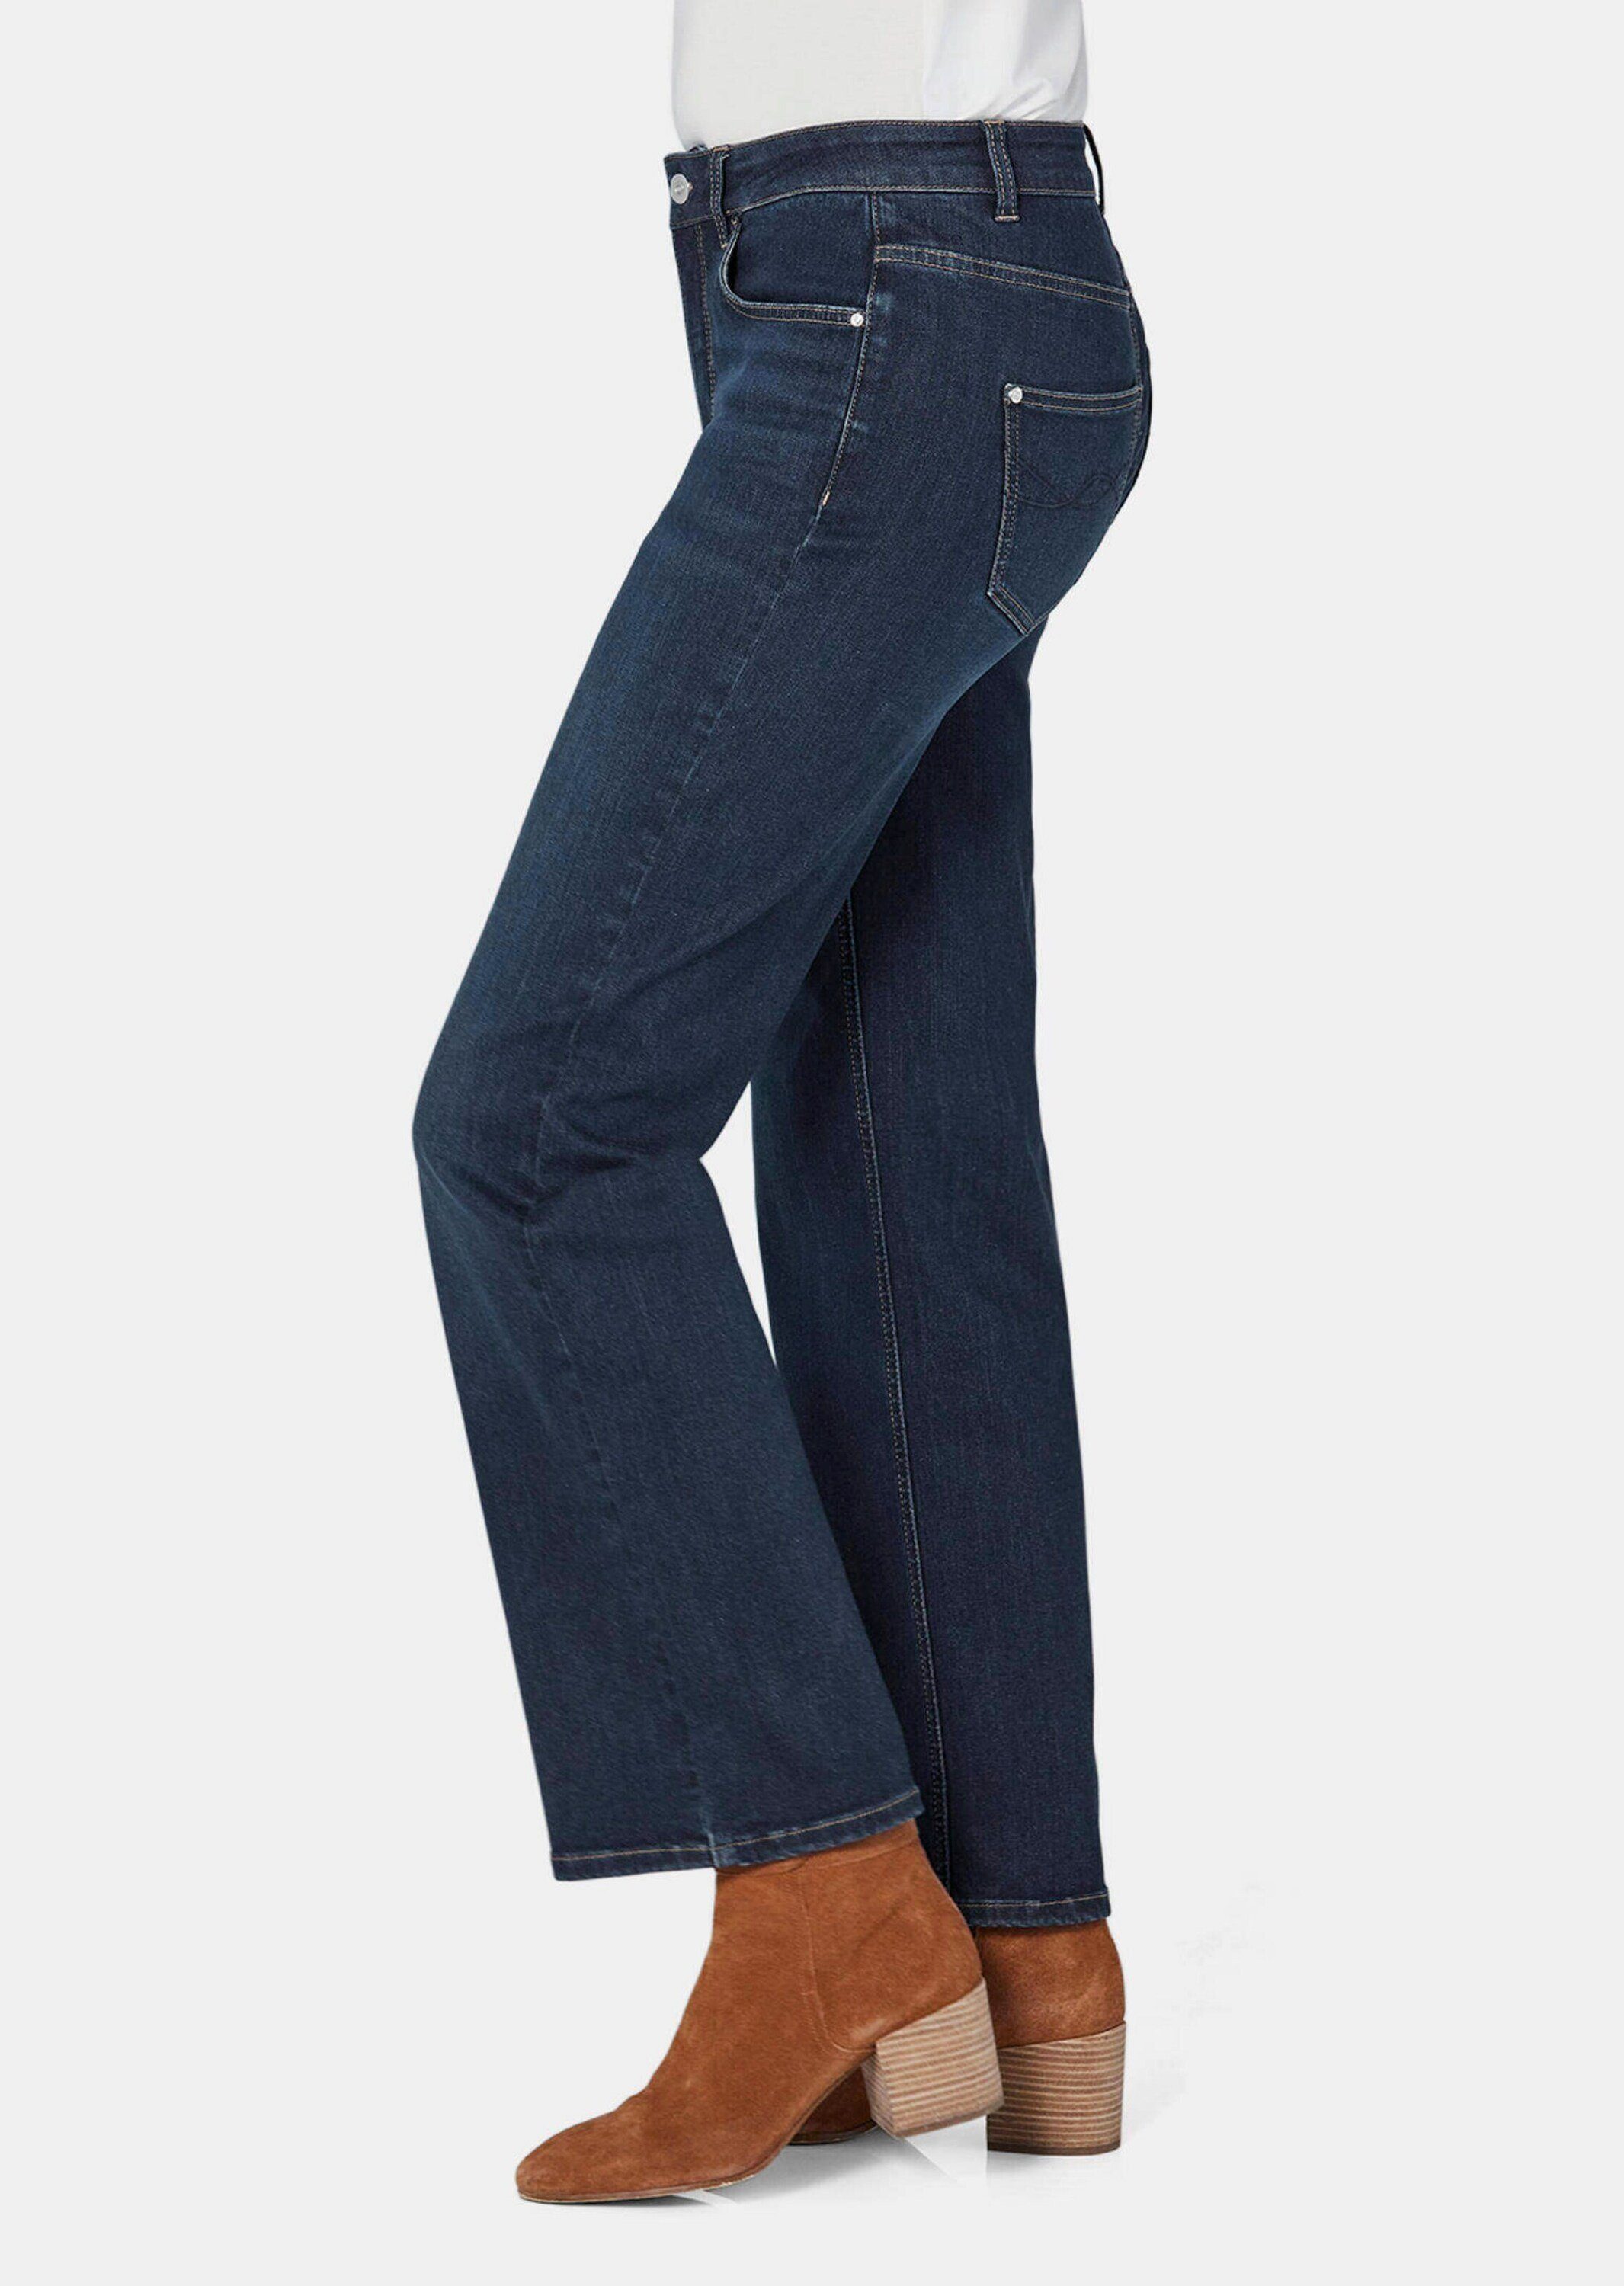 Jeans Bequeme Kurzgröße: Denim GOLDNER mit weitem Jeans Bein